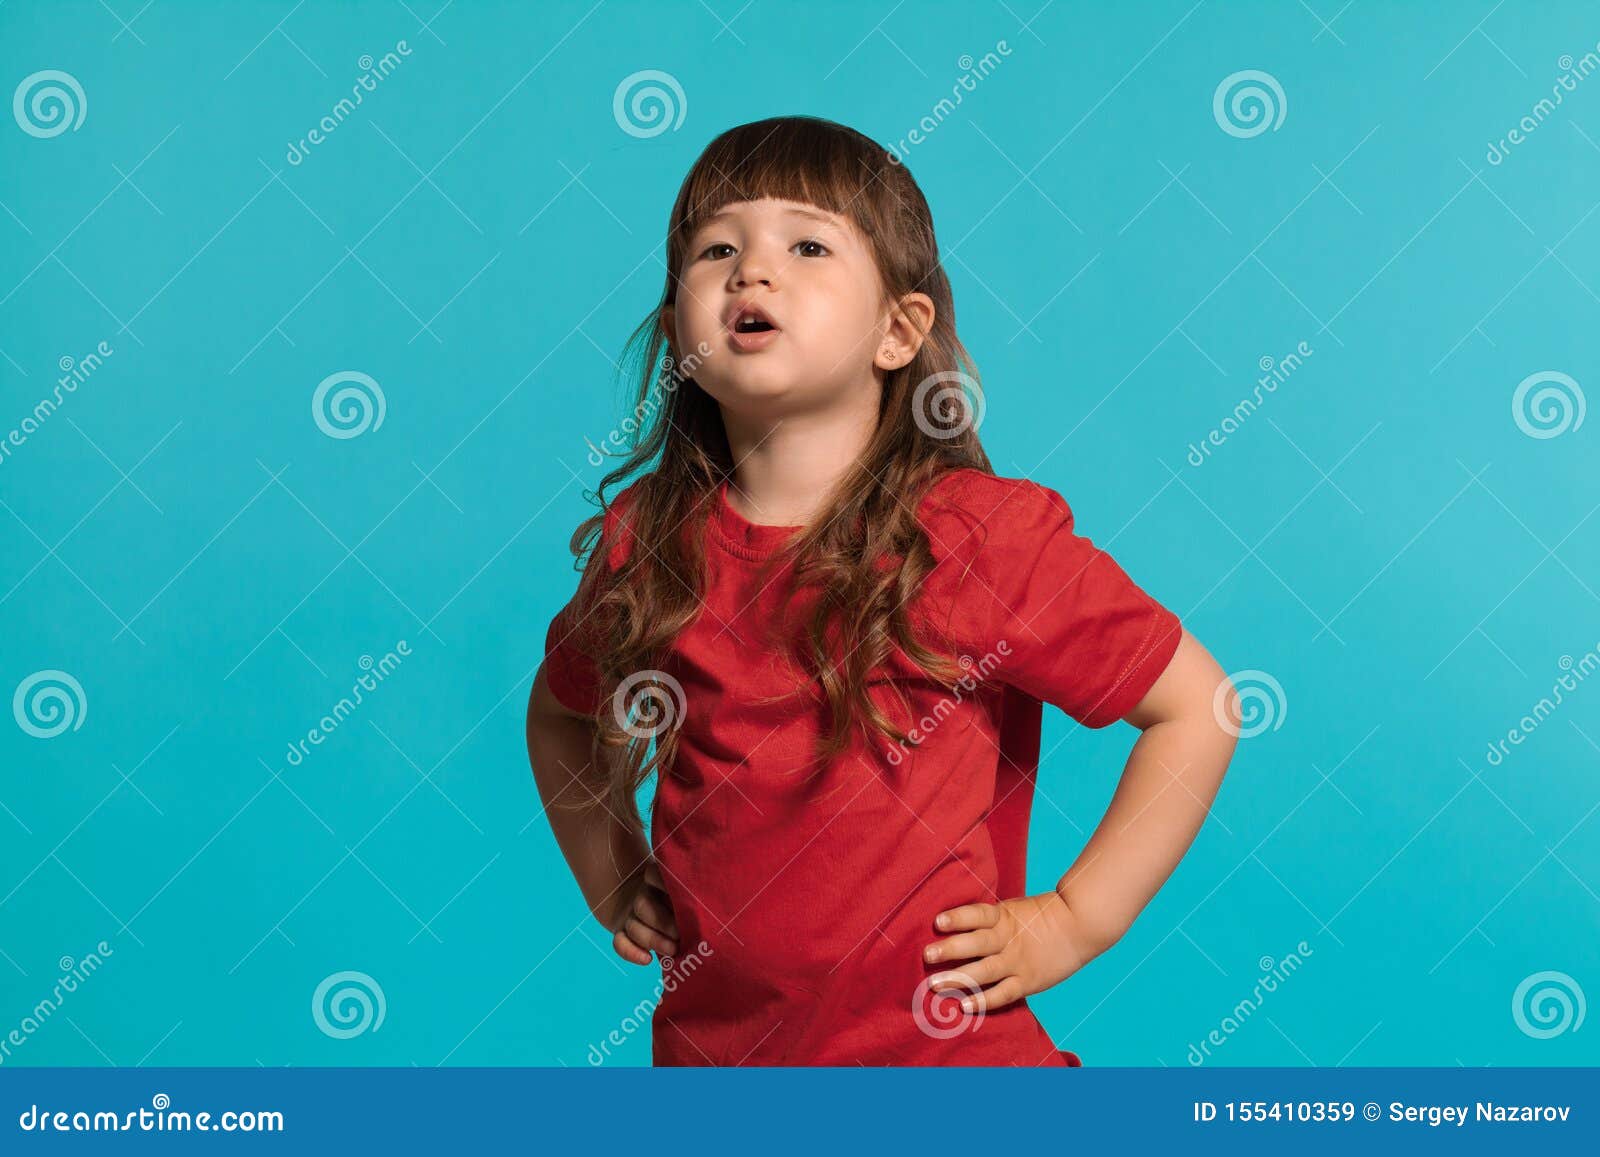 La Niña Hermosa Que Lleva En Una Camiseta Roja Presentando Contra Un Fondo Azul Del Estudio Imagen de archivo - Imagen de hembra, manera: 155410359